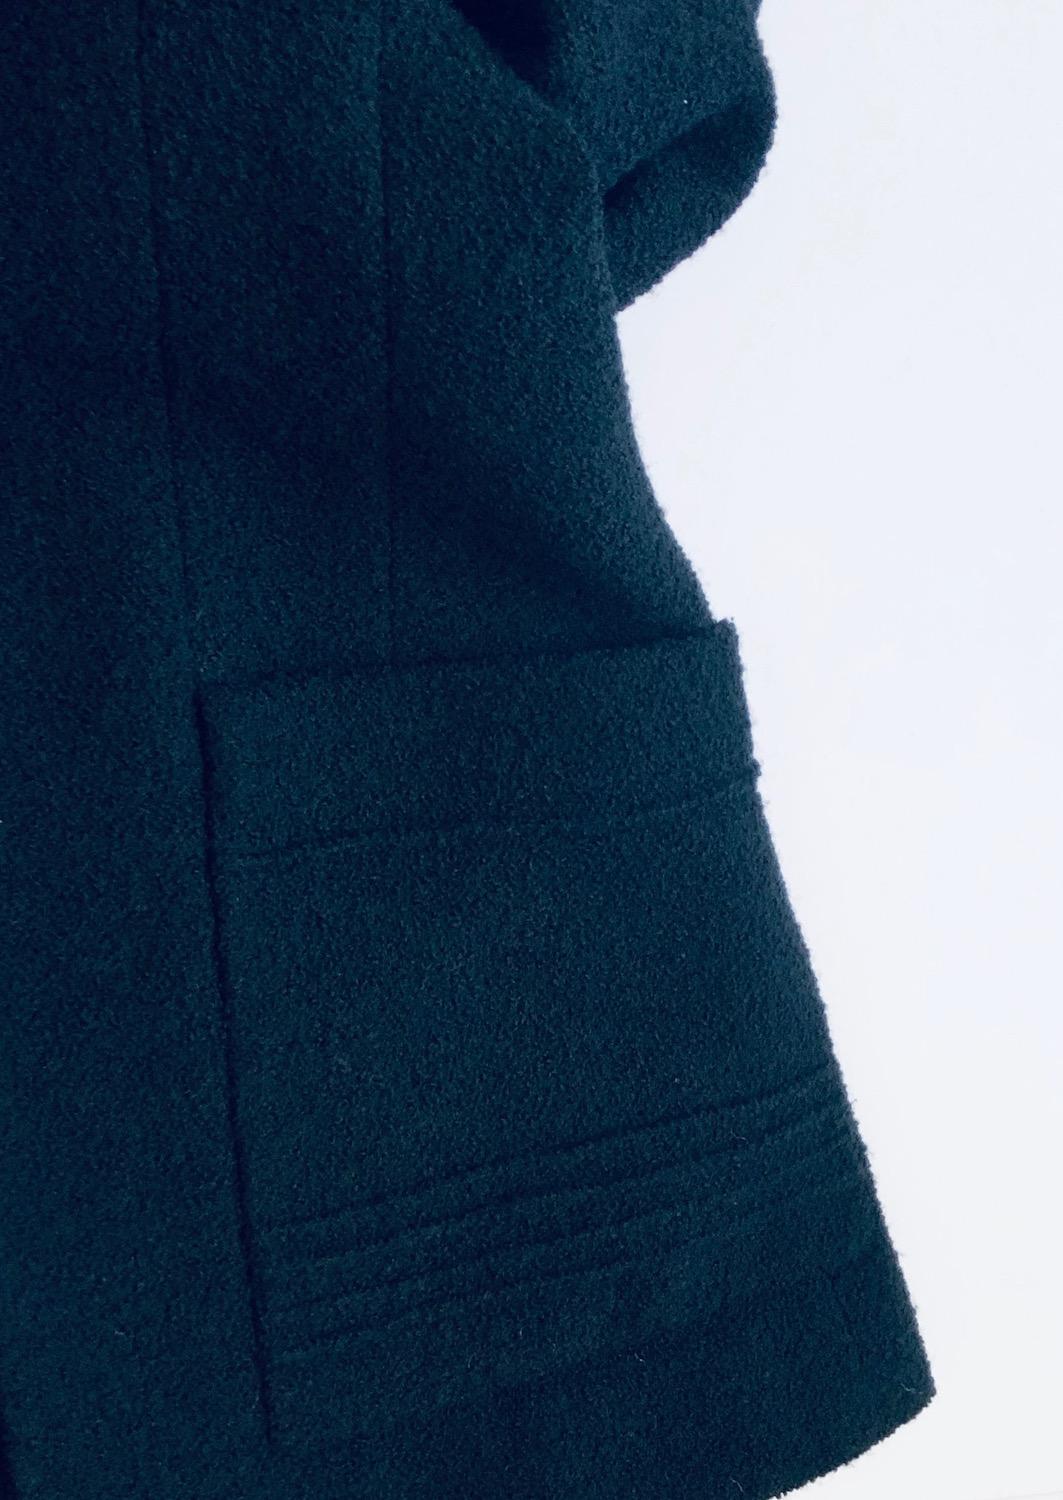 CHANEL Vintage Black Bouclé Wool CC Logo Buttons Jacket Suit 1993 For Sale 7